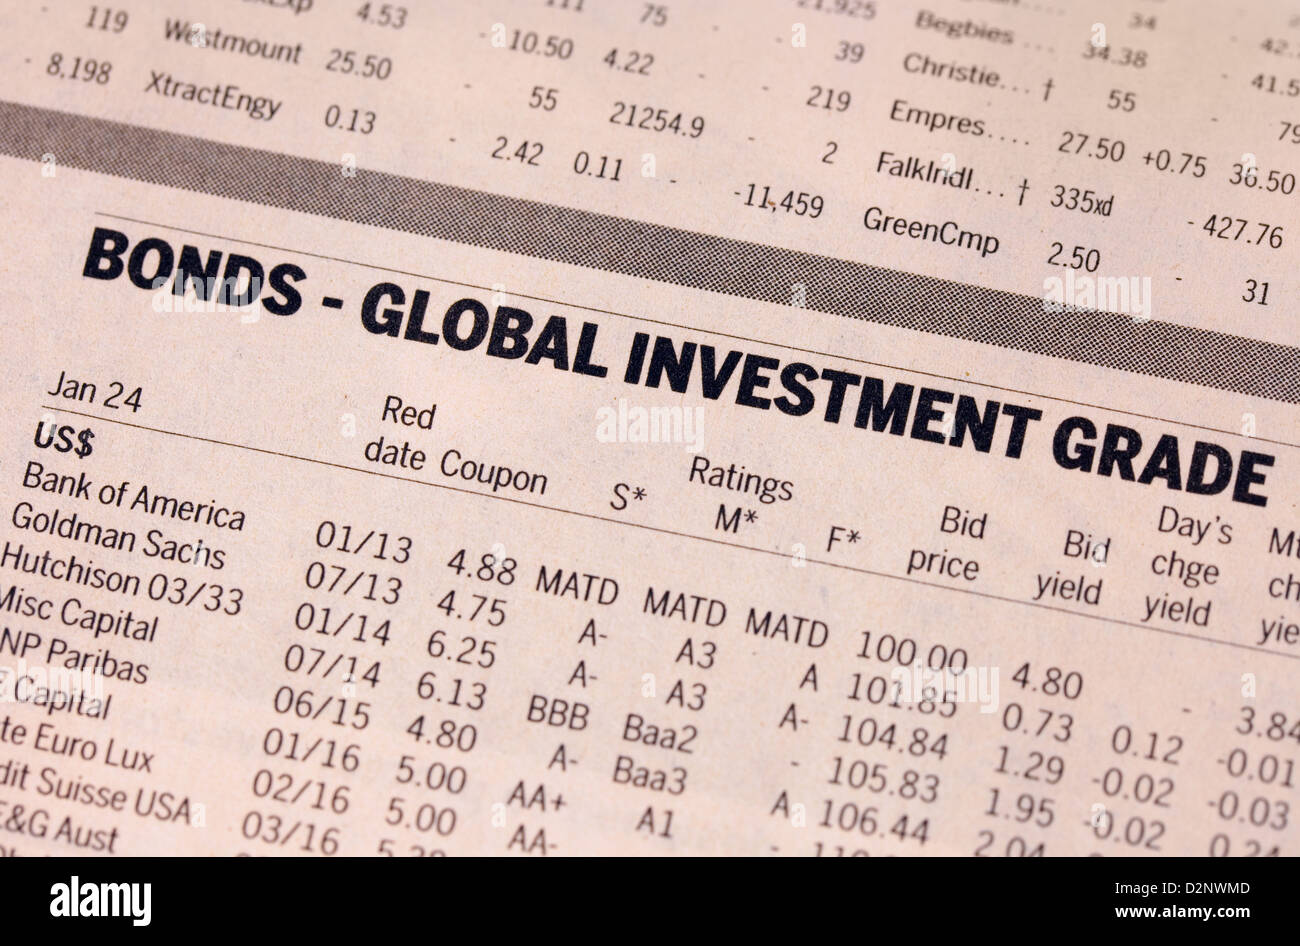 - Les obligations d'investissement mondial commerce - Finances valeurs dans le journal Financial Times, UK Banque D'Images